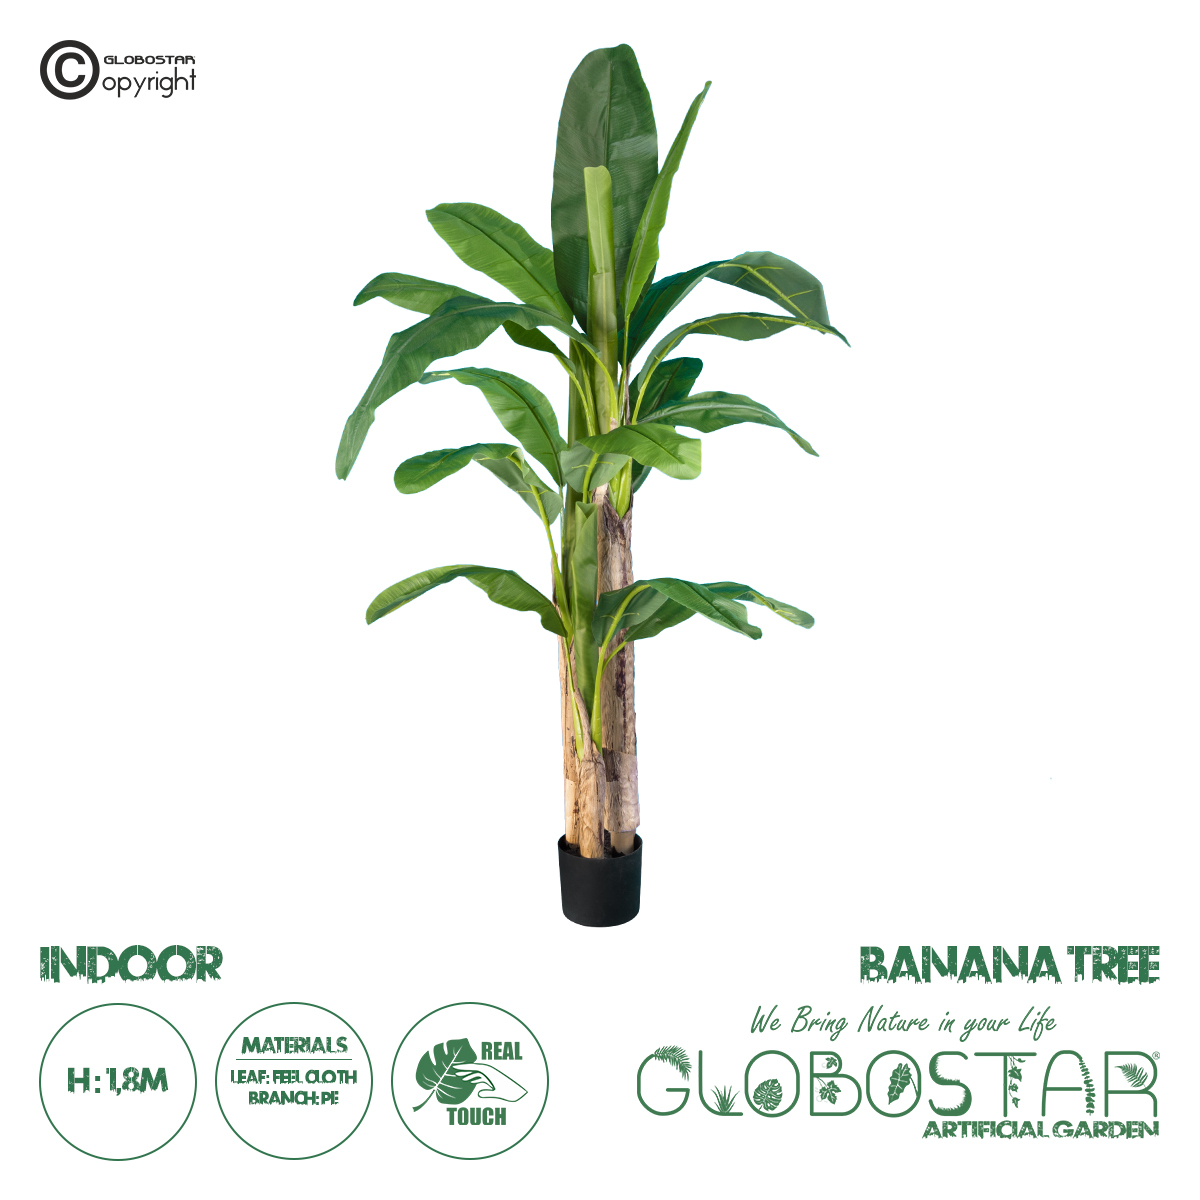 GloboStar® Artificial Garden BANANA TREE 20017 Τεχνητό Διακοσμητικό Φυτό Μπανανιά – Μπανανόδεντρο Υ180cm